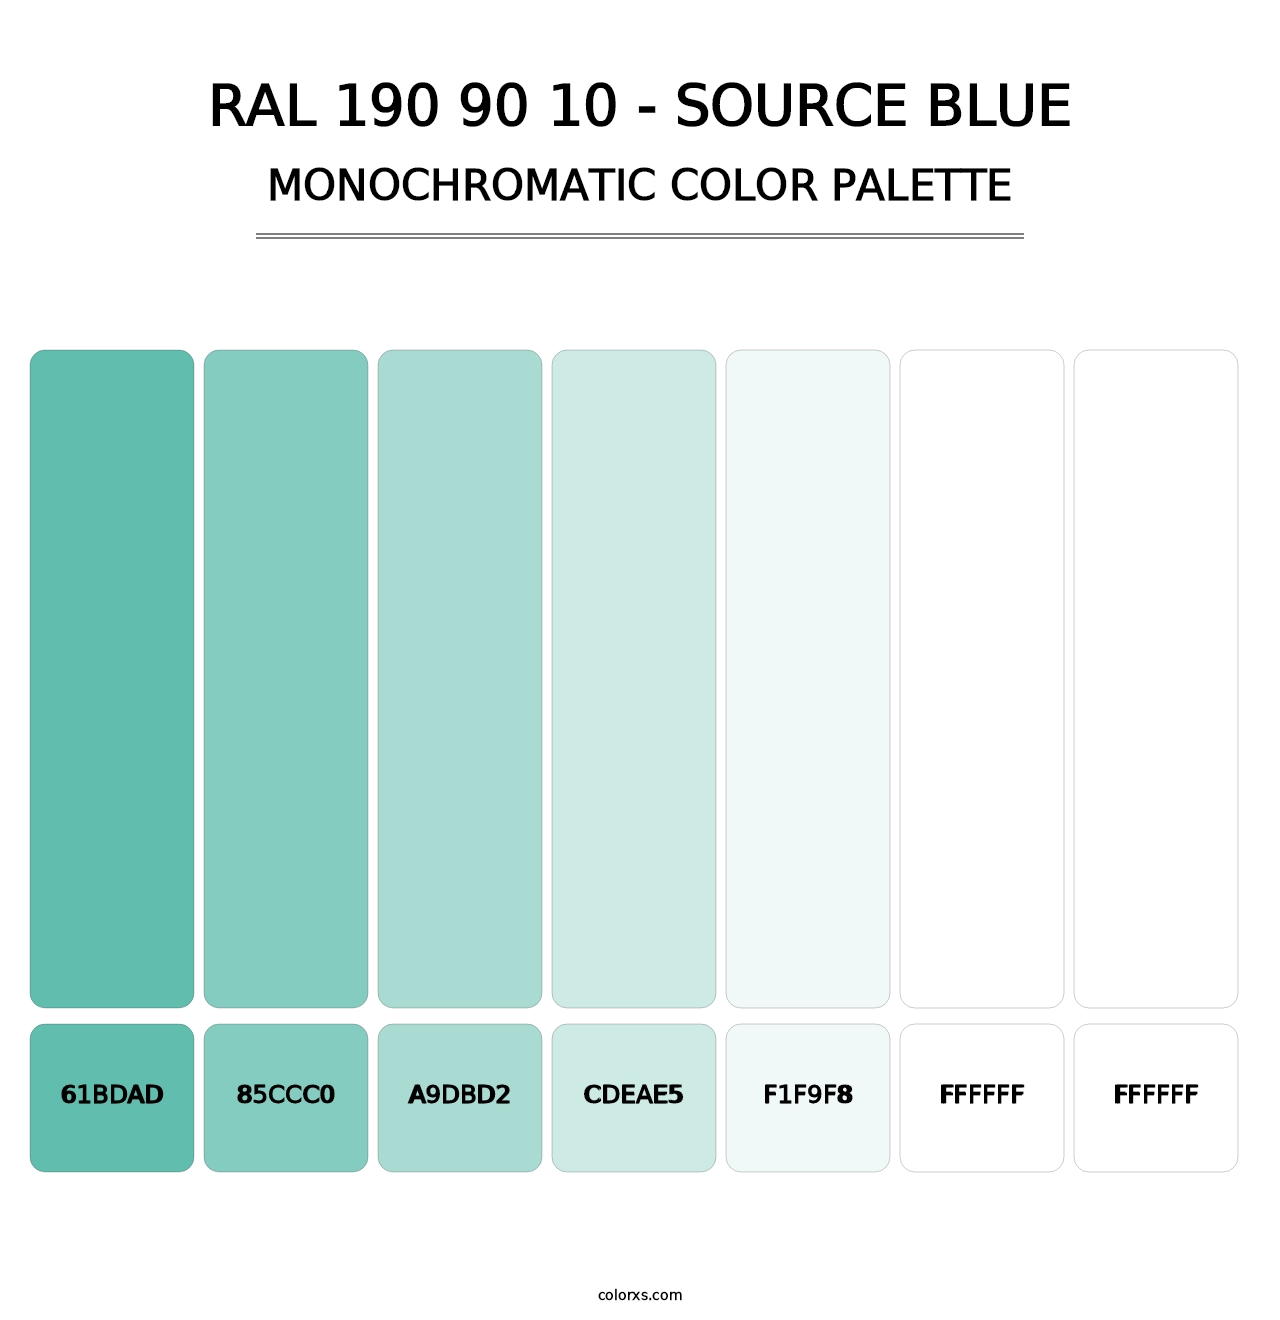 RAL 190 90 10 - Source Blue - Monochromatic Color Palette